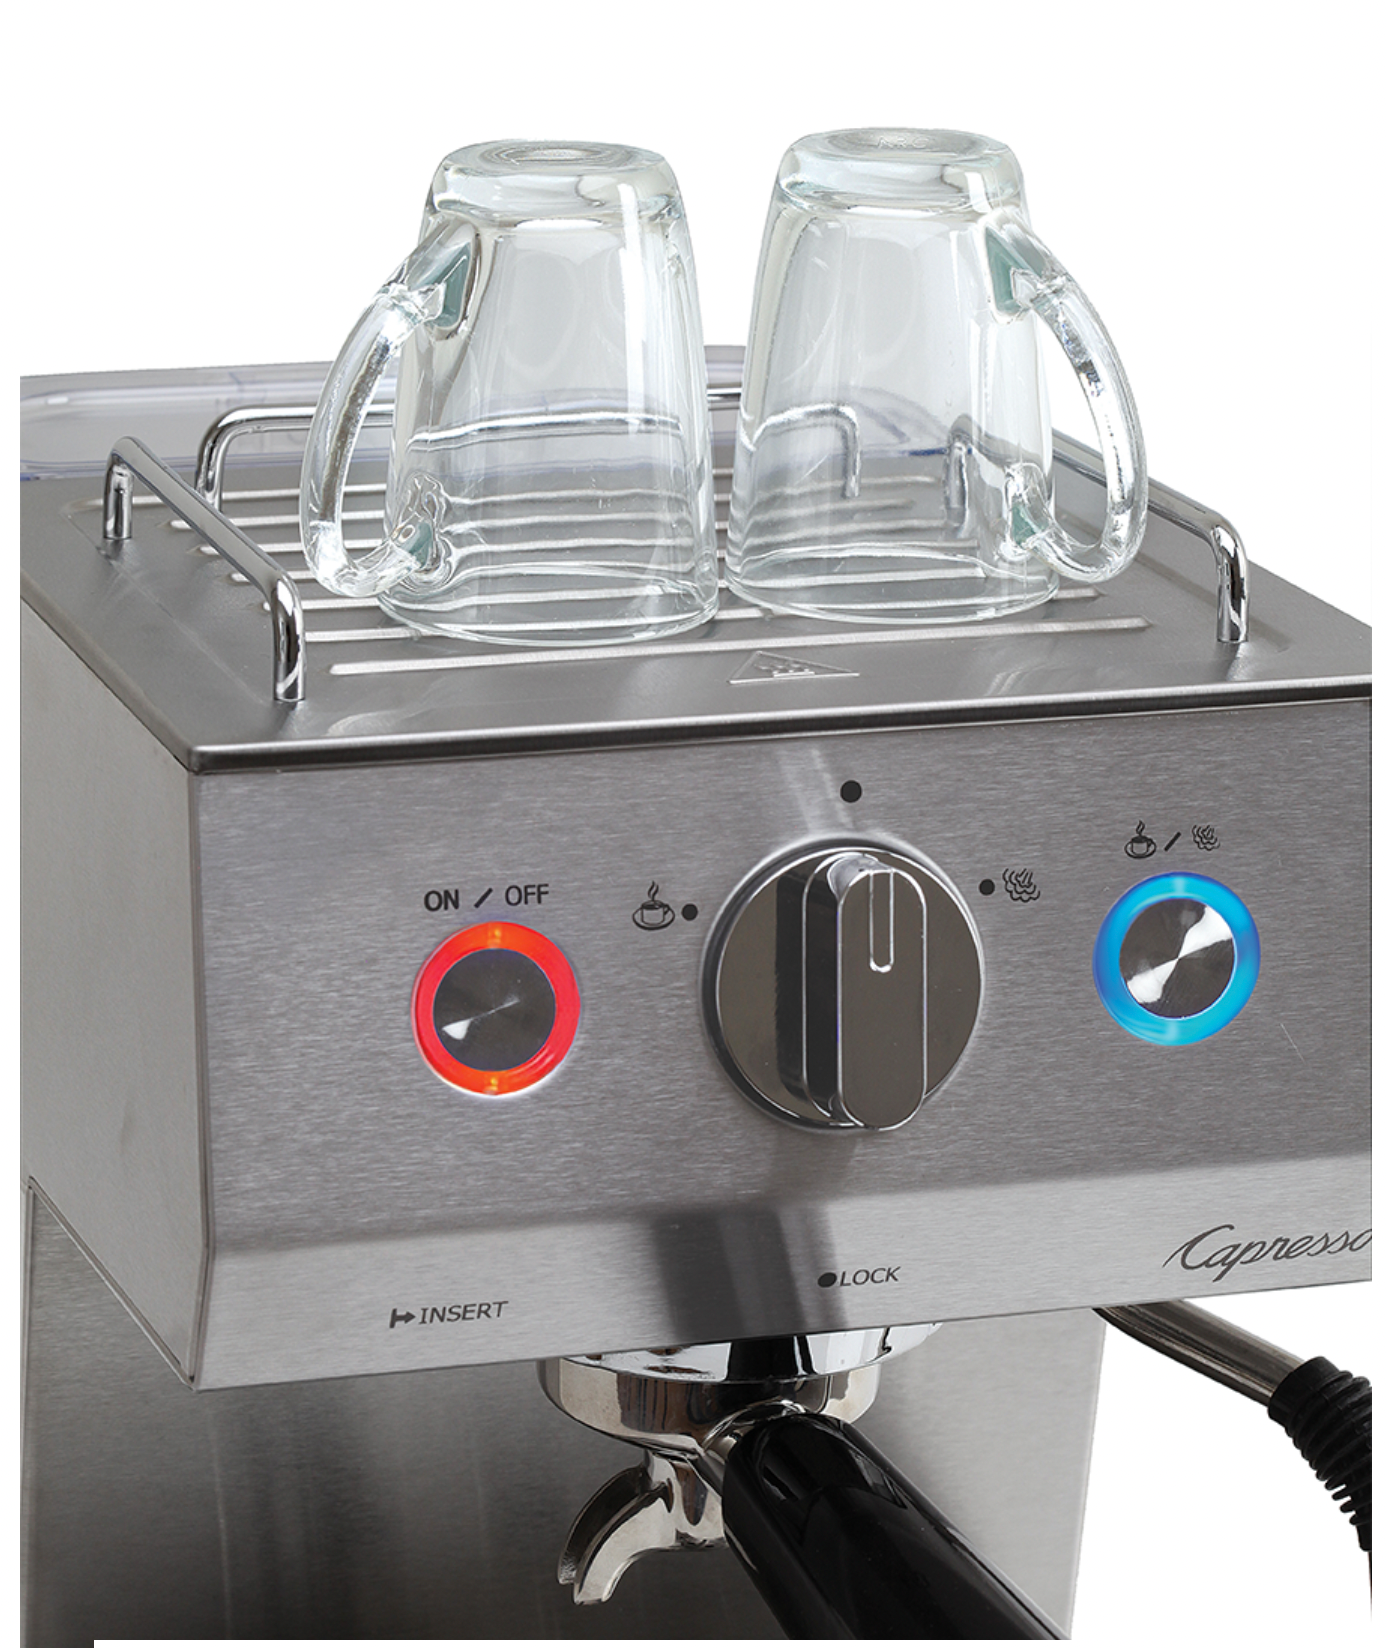 Capresso 4-Cup Espresso & Cappaccino Maker